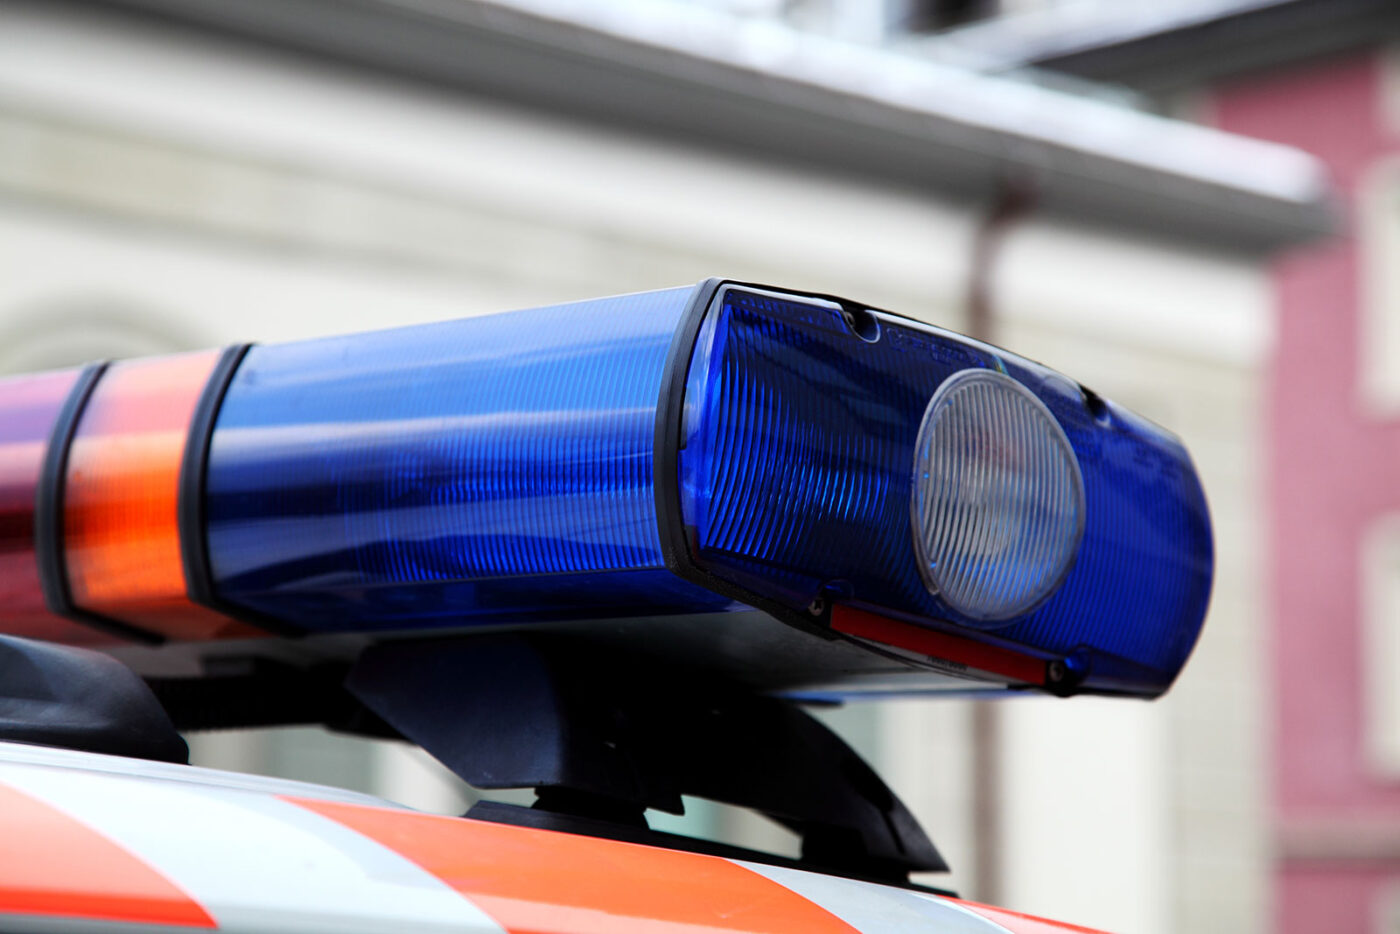 Tötungsdelikt in Emmenbrücke – mutmasslicher Täter festgenommen